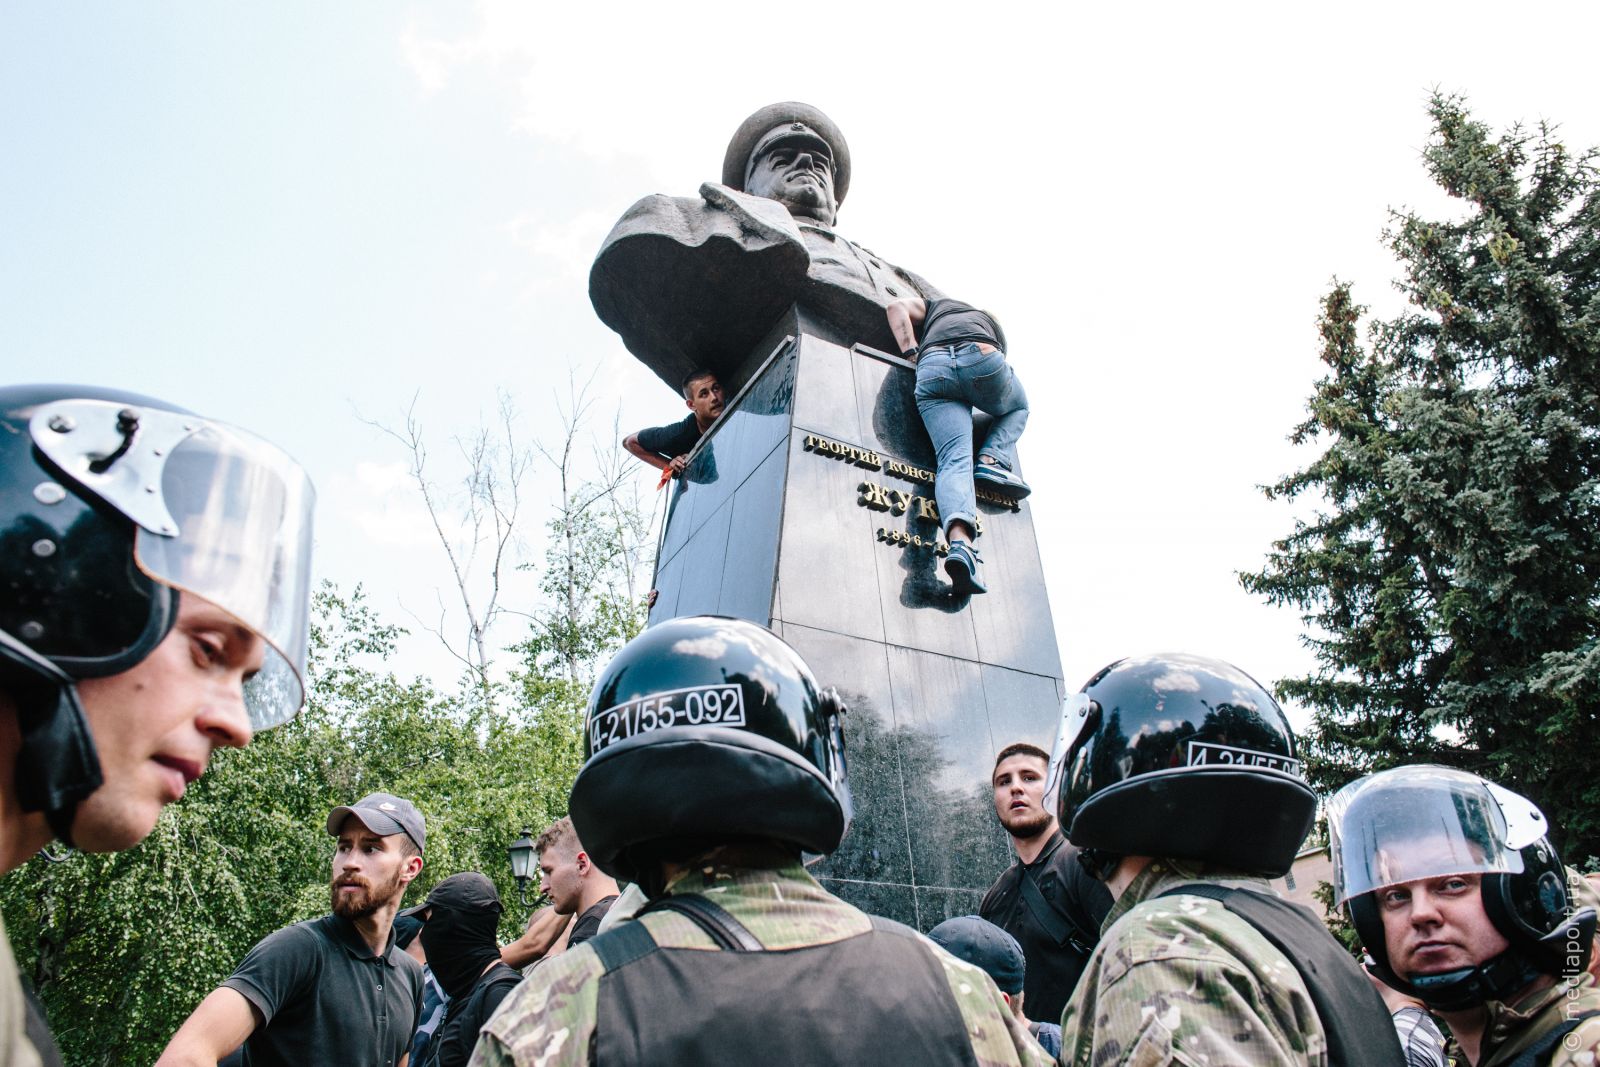 2 червня 2019 року пам'ятник Жукову у Харкові повалили вдруге. Вперше це сталося рік тому в ніч з 5 на 6 травня